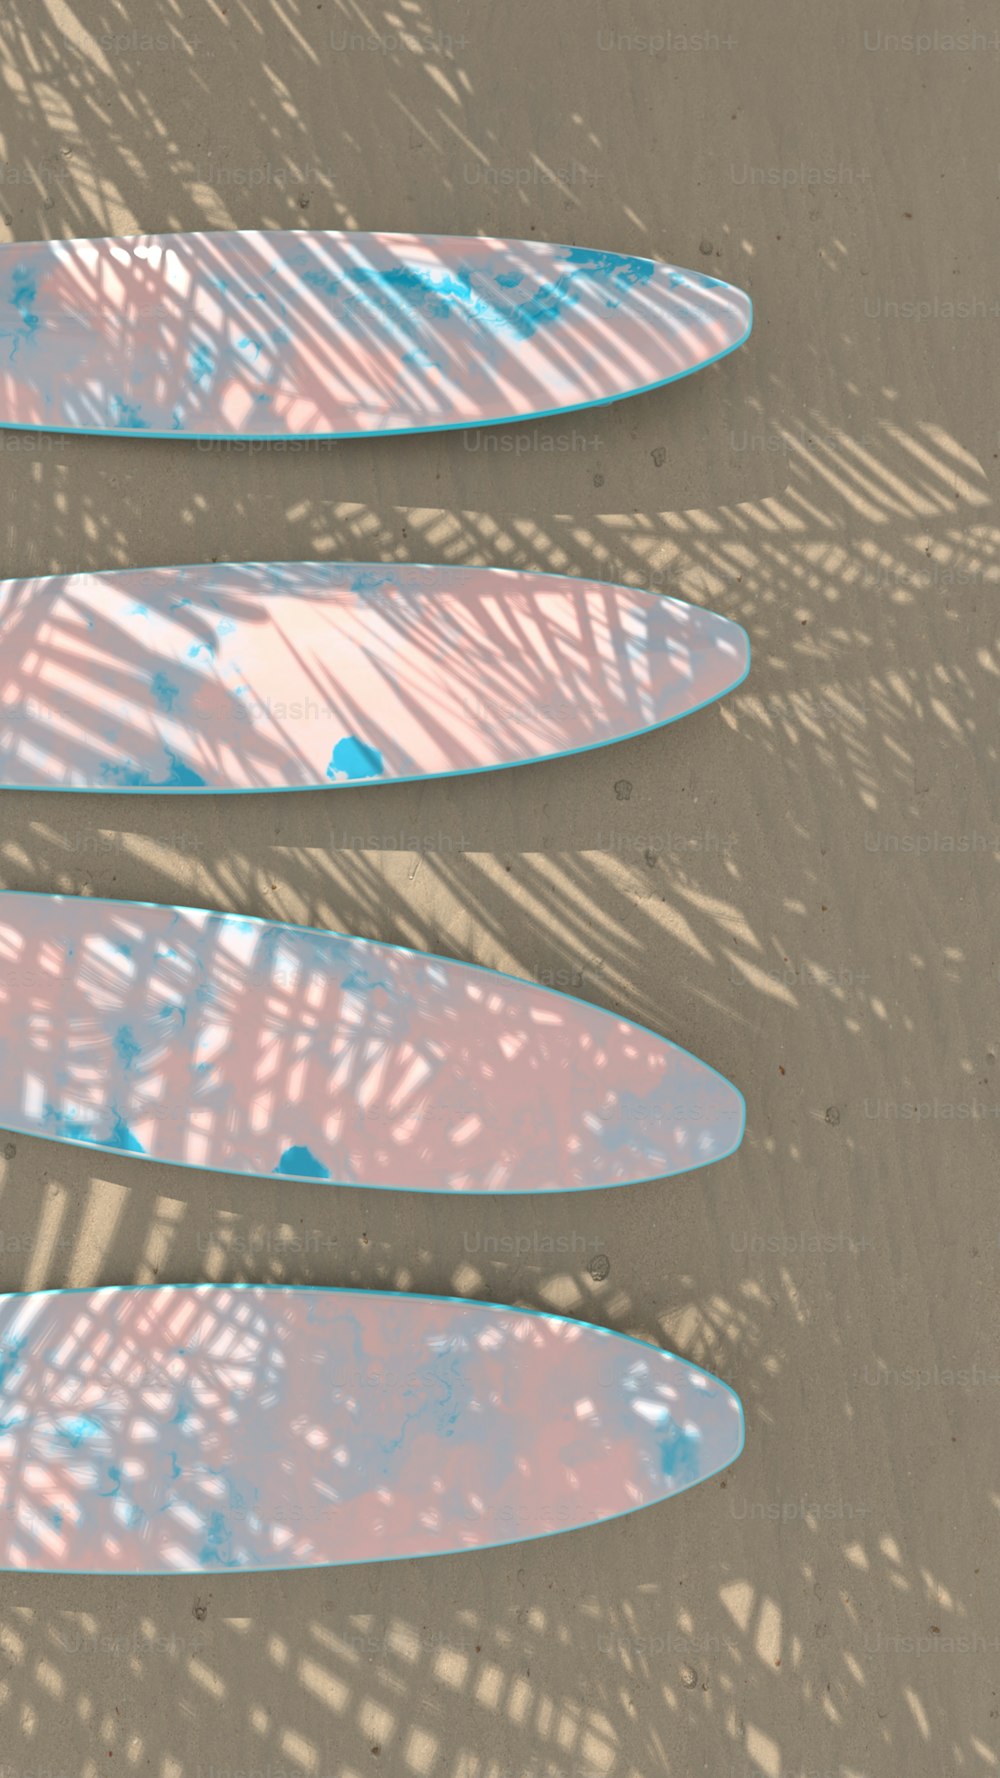 모래 사장 위에 누워 있는 서핑보드 무리